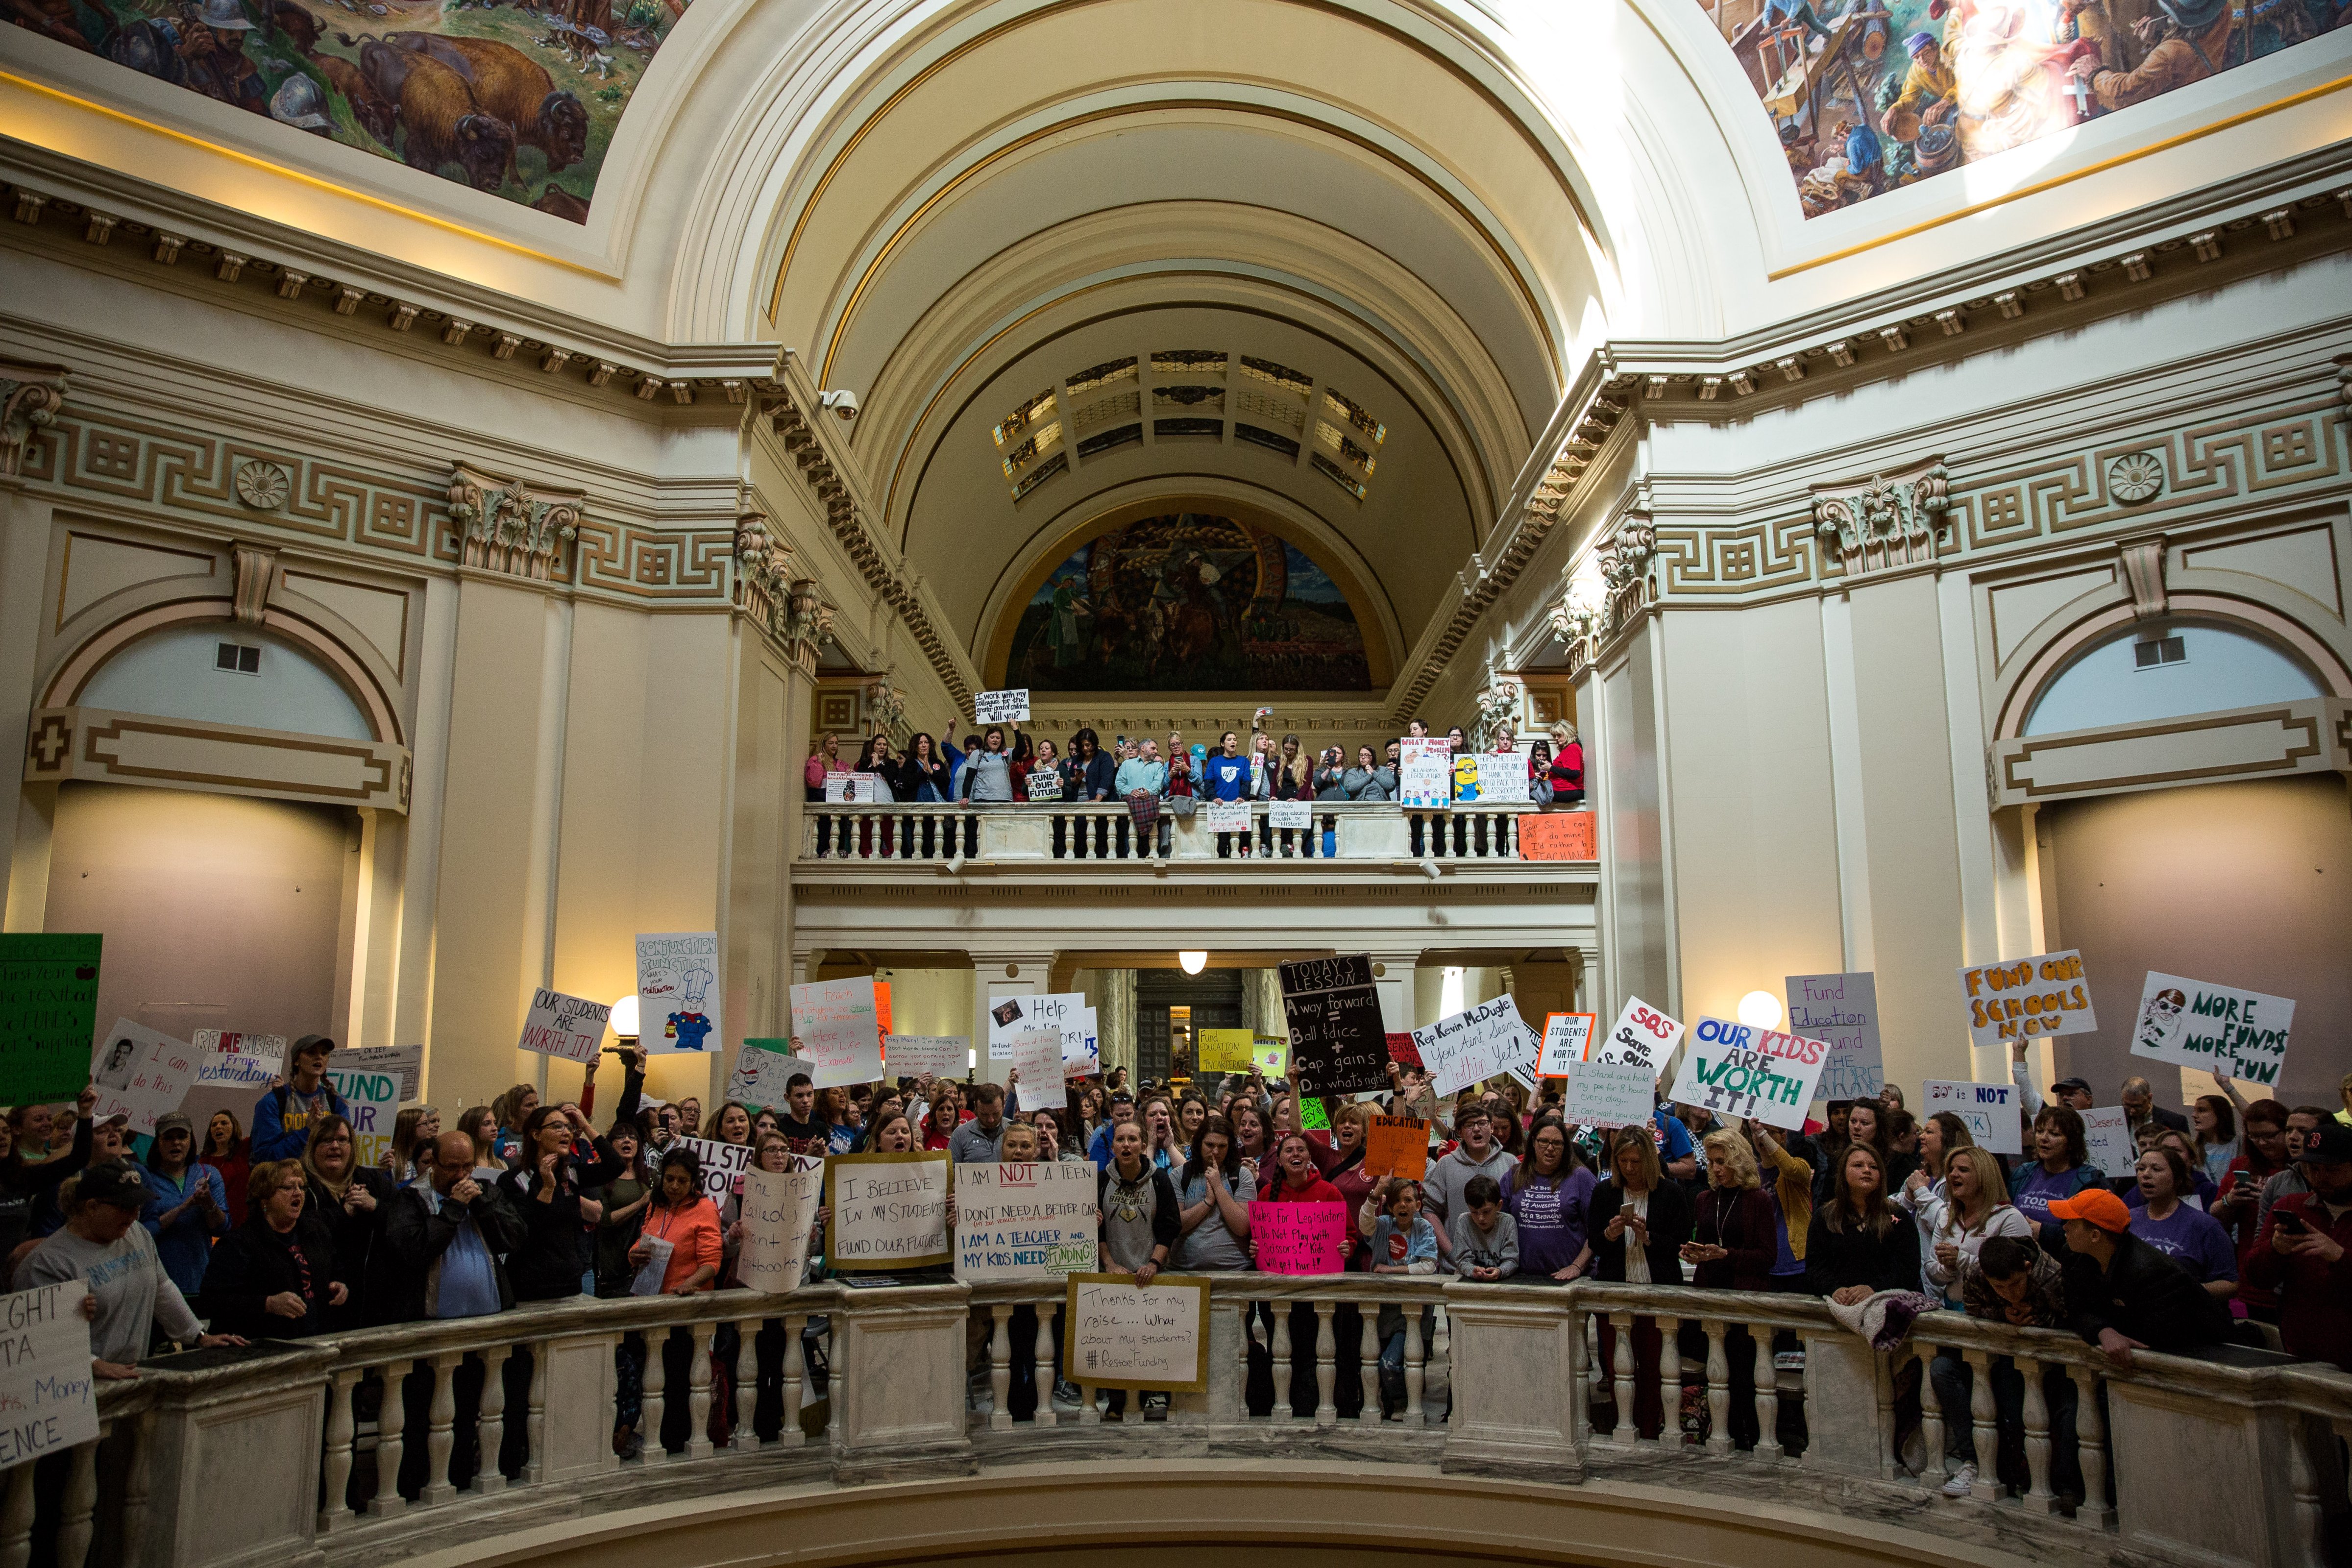 Oklahoma Teachers Strike Enters Third Day